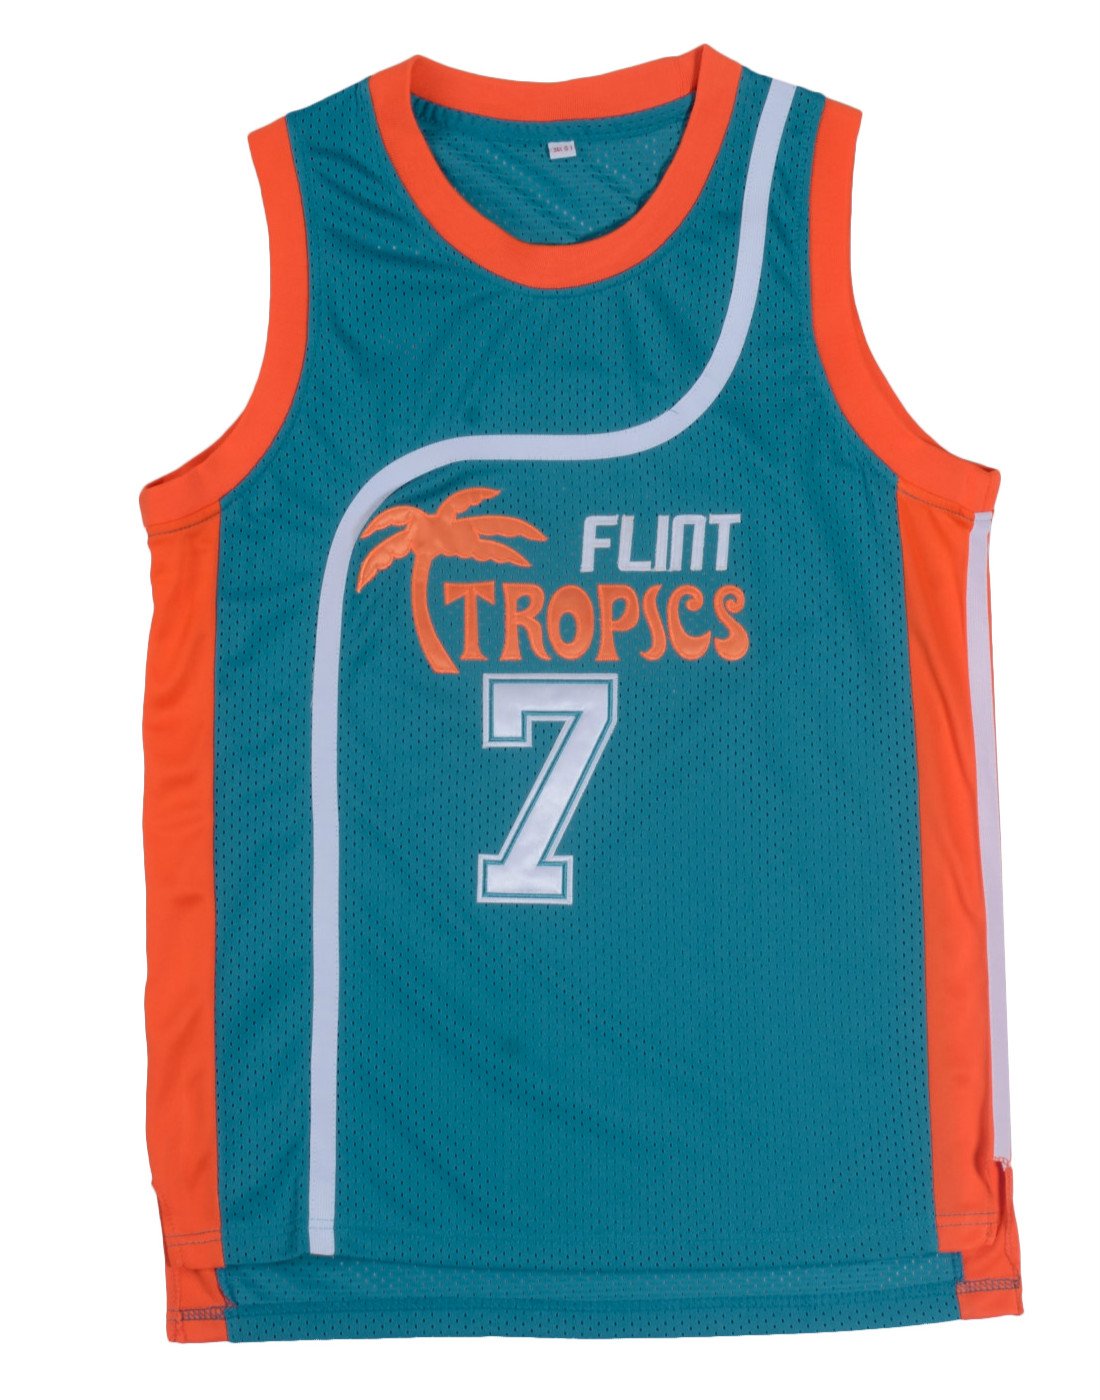 Flint Tropical Basketball Jersey